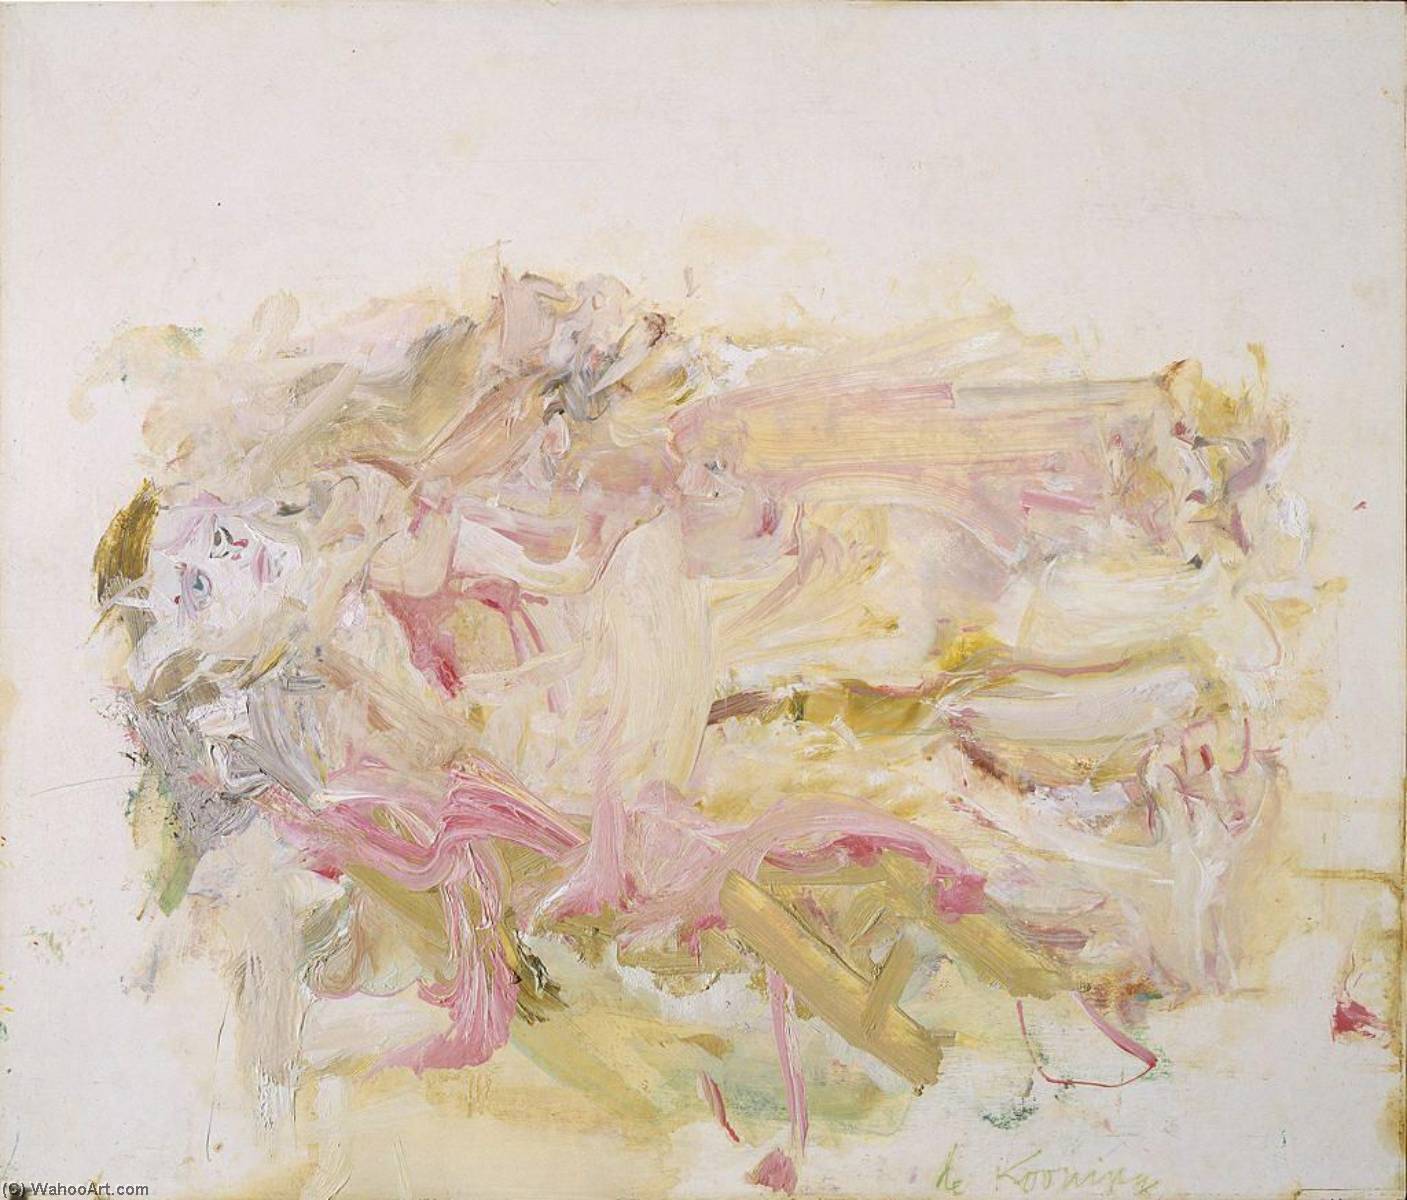 WikiOO.org - Encyclopedia of Fine Arts - Målning, konstverk Willem De Kooning - Reclining Man (John F. Kennedy)